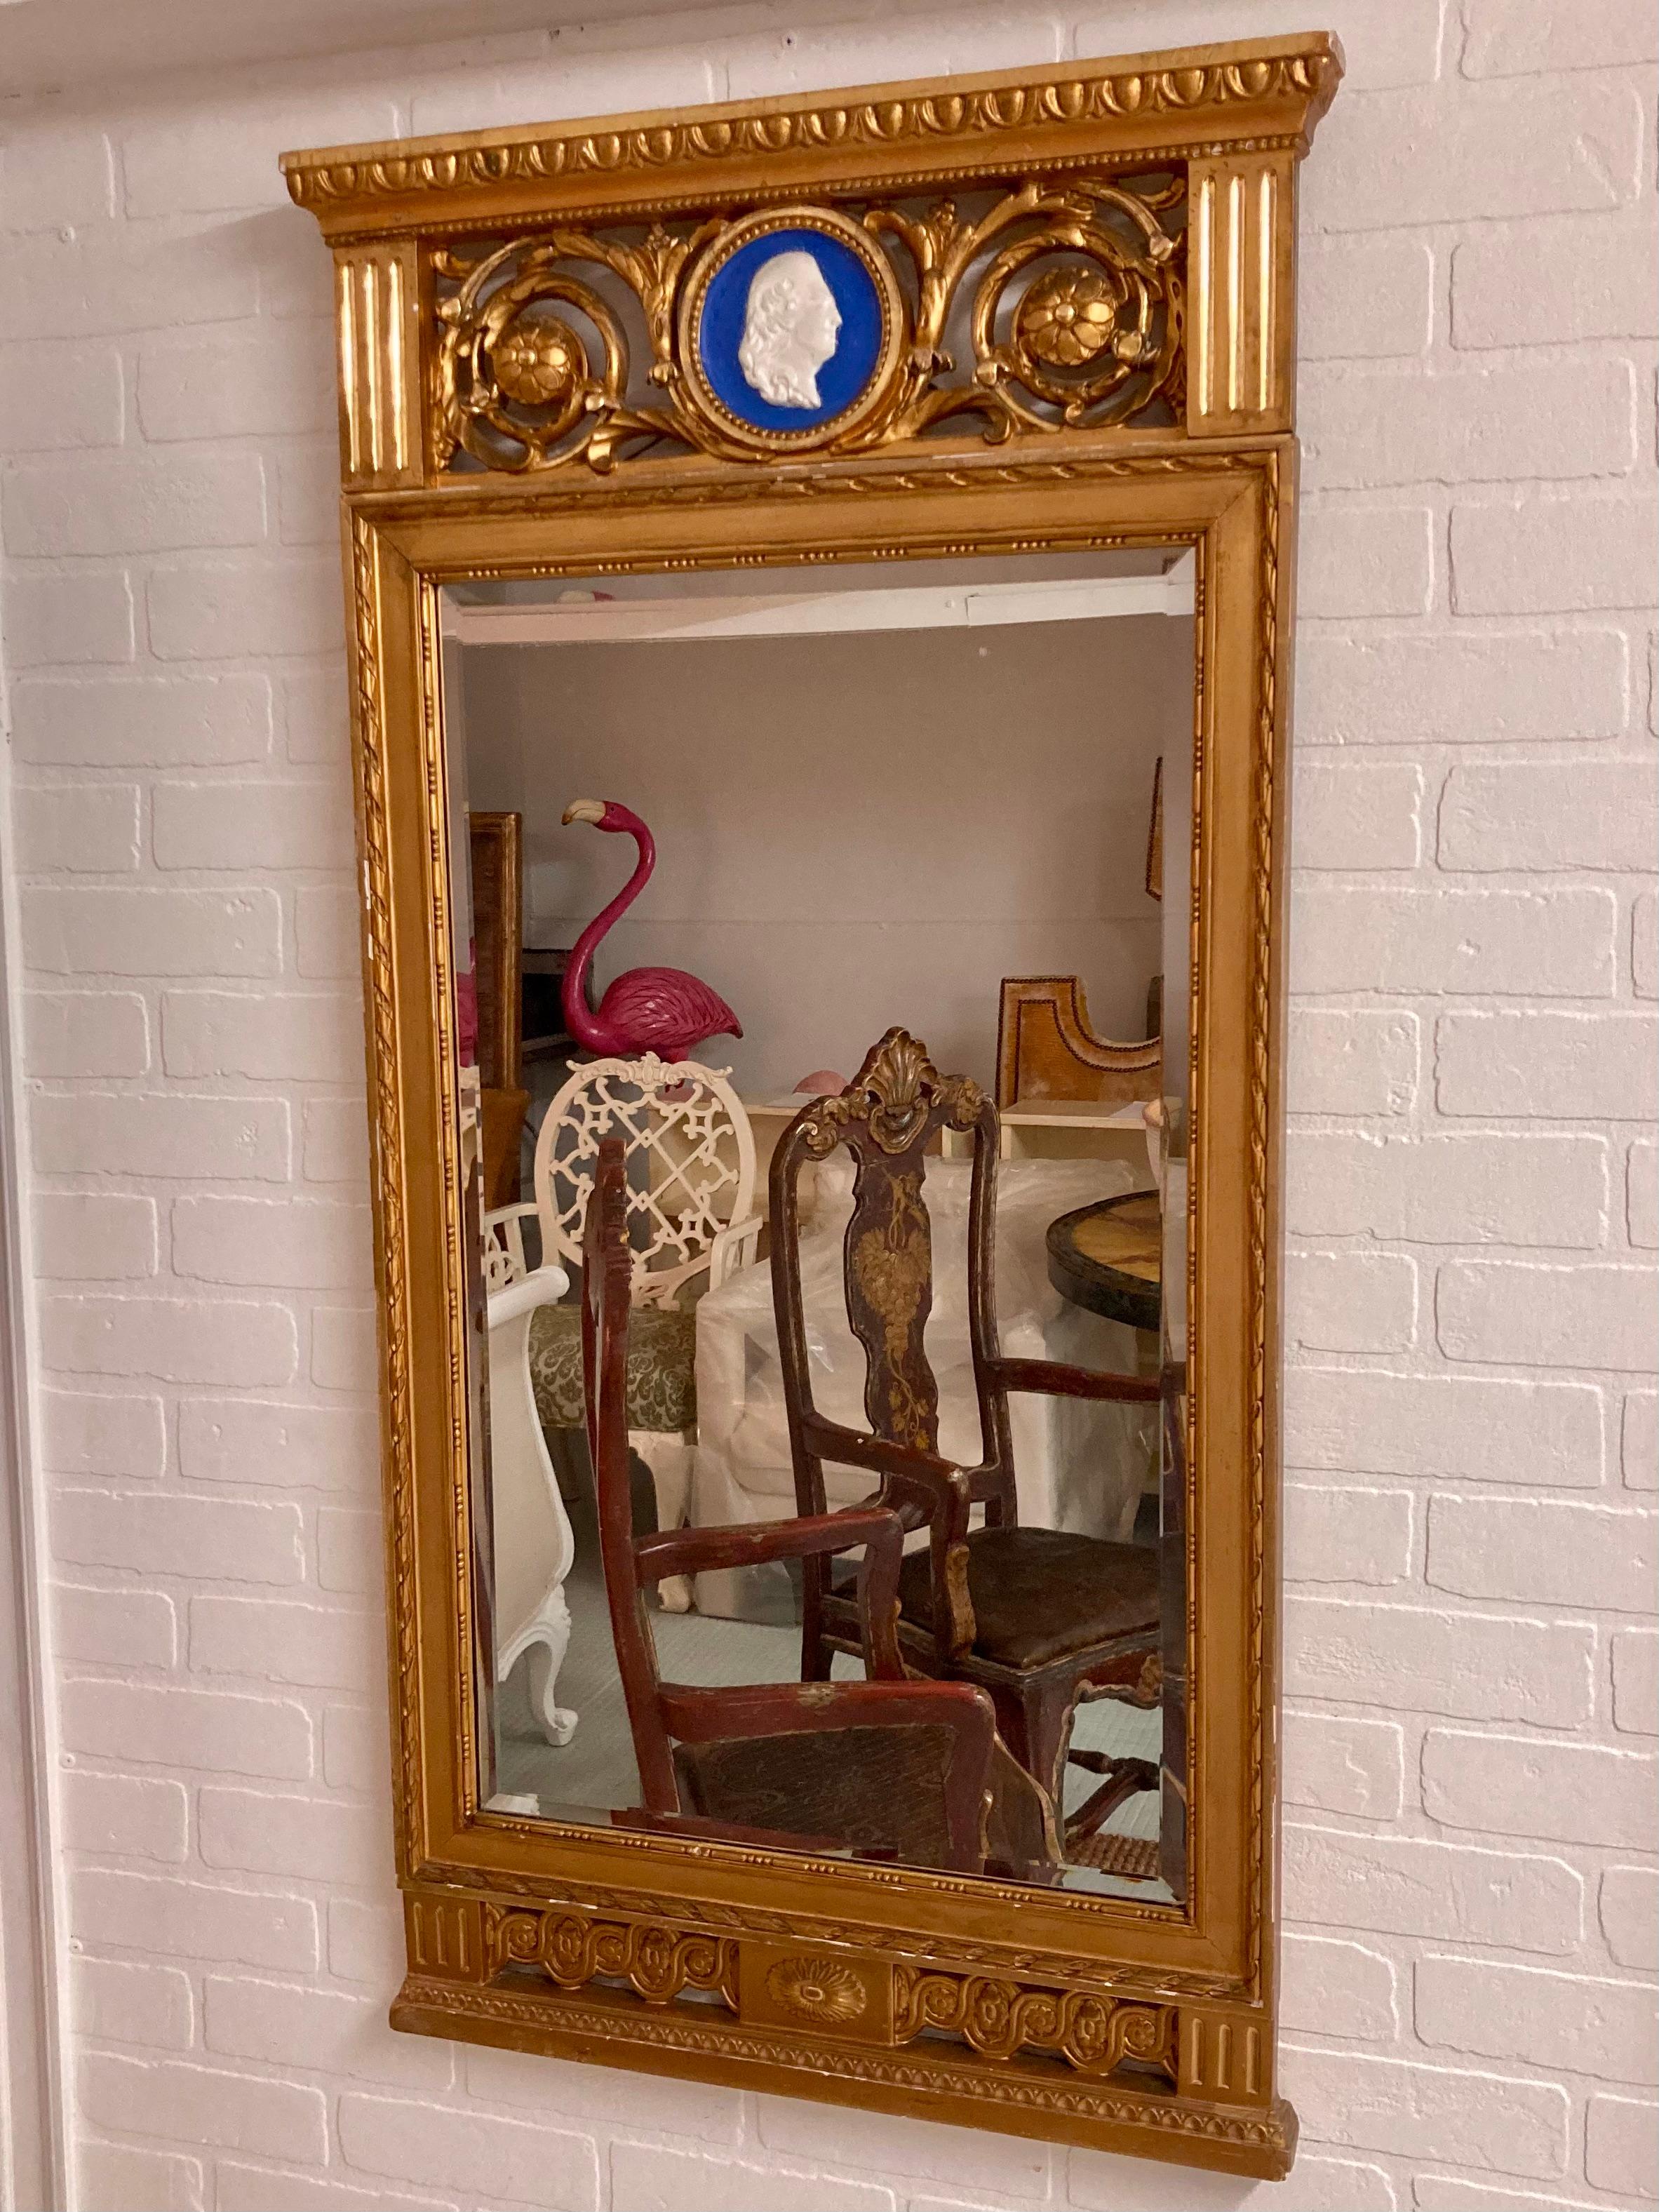 Magnifique miroir classique français doré avec plaque de style Wedgewood. Magnifiques détails sculptés et finition dorée de qualité. Ajoutez un peu de style français à votre maison.